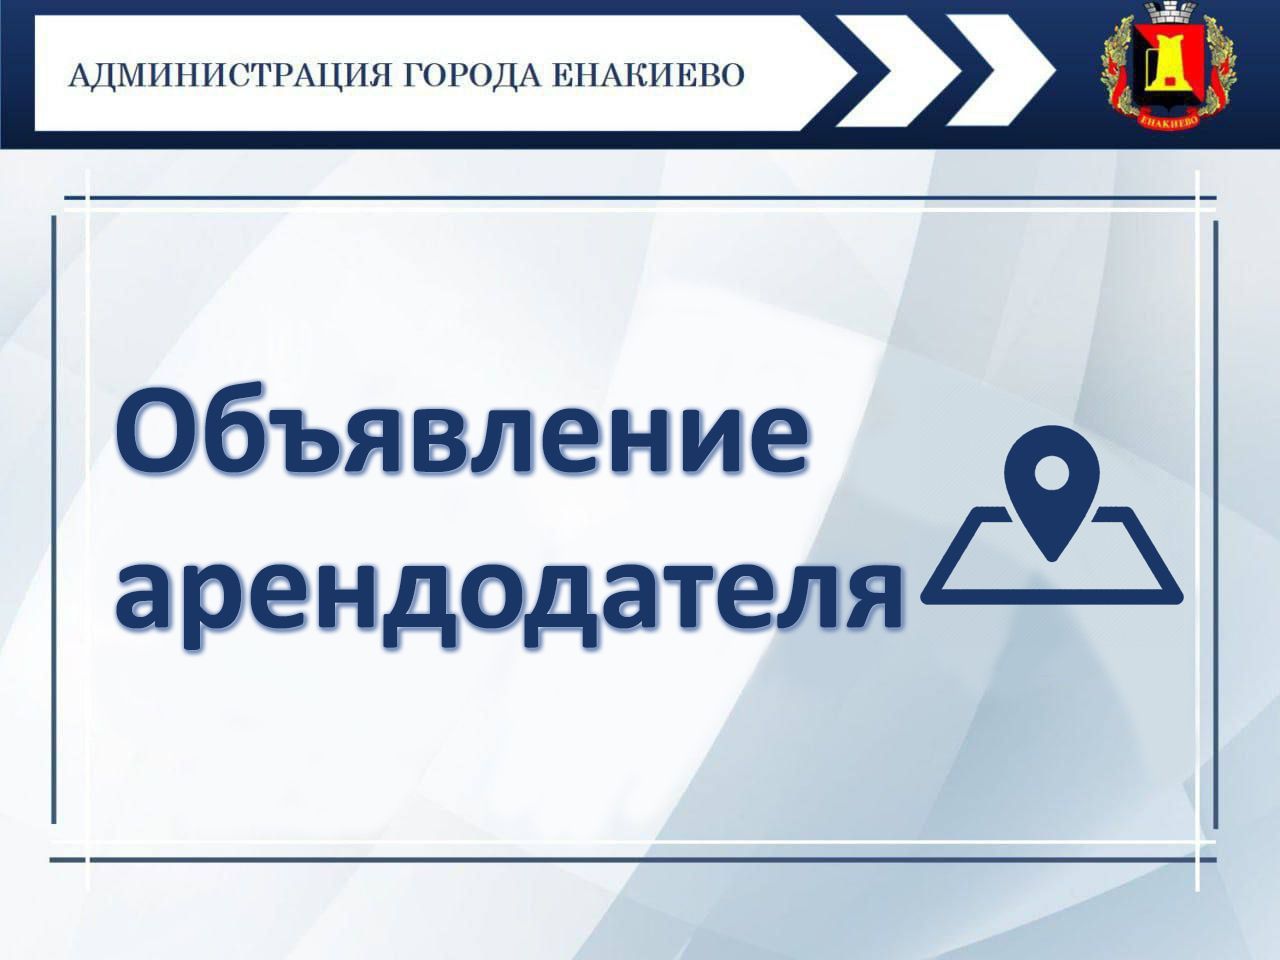 Объявление арендодателя – управления жилищно-коммунального хозяйства администрации города Енакиево.